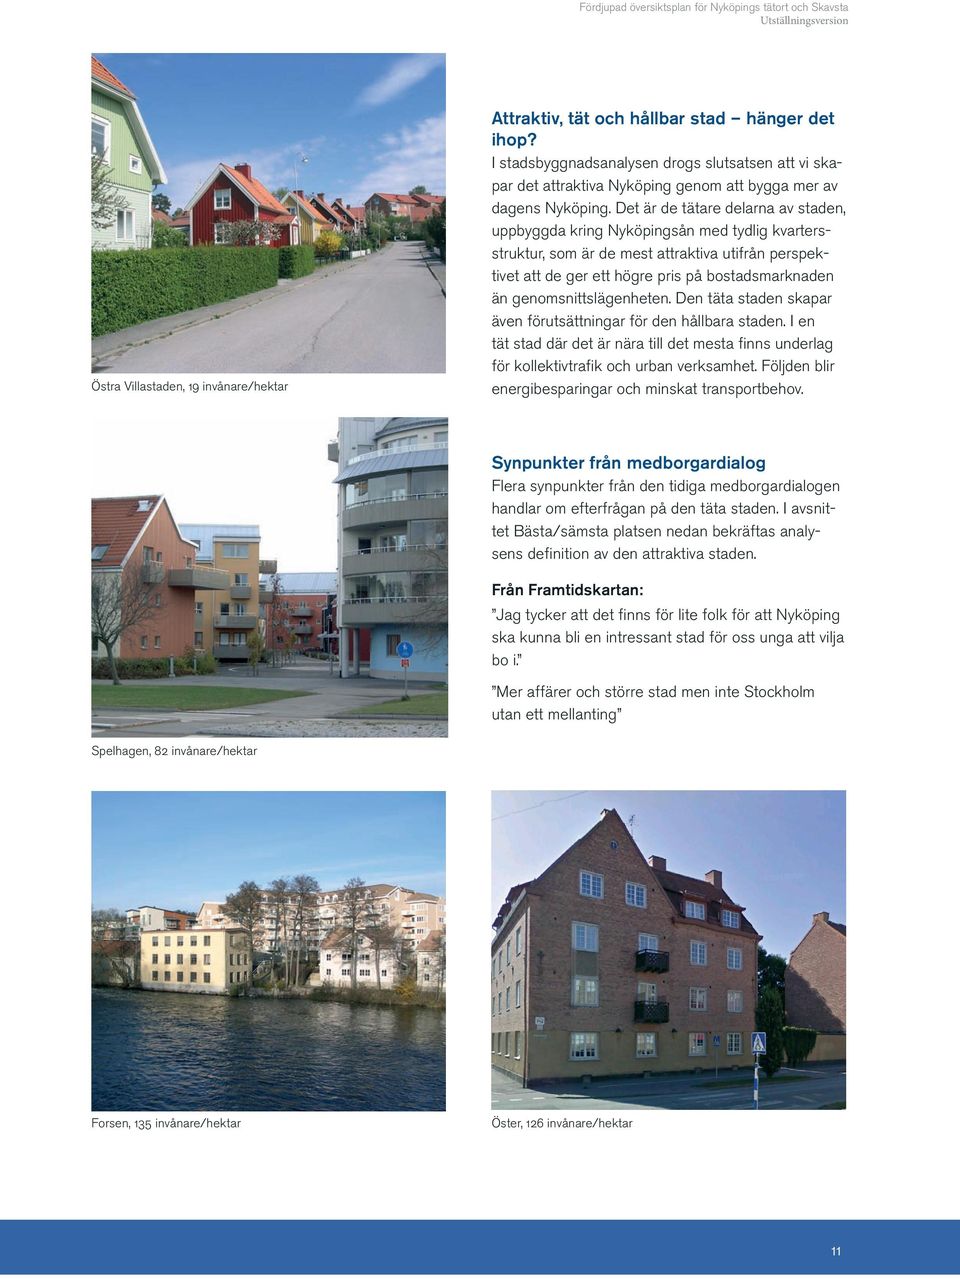 Det är de tätare delarna av staden, uppbyggda kring Nyköpingsån med tydlig kvartersstruktur, som är de mest attraktiva utifrån perspektivet att de ger ett högre pris på bostadsmarknaden än